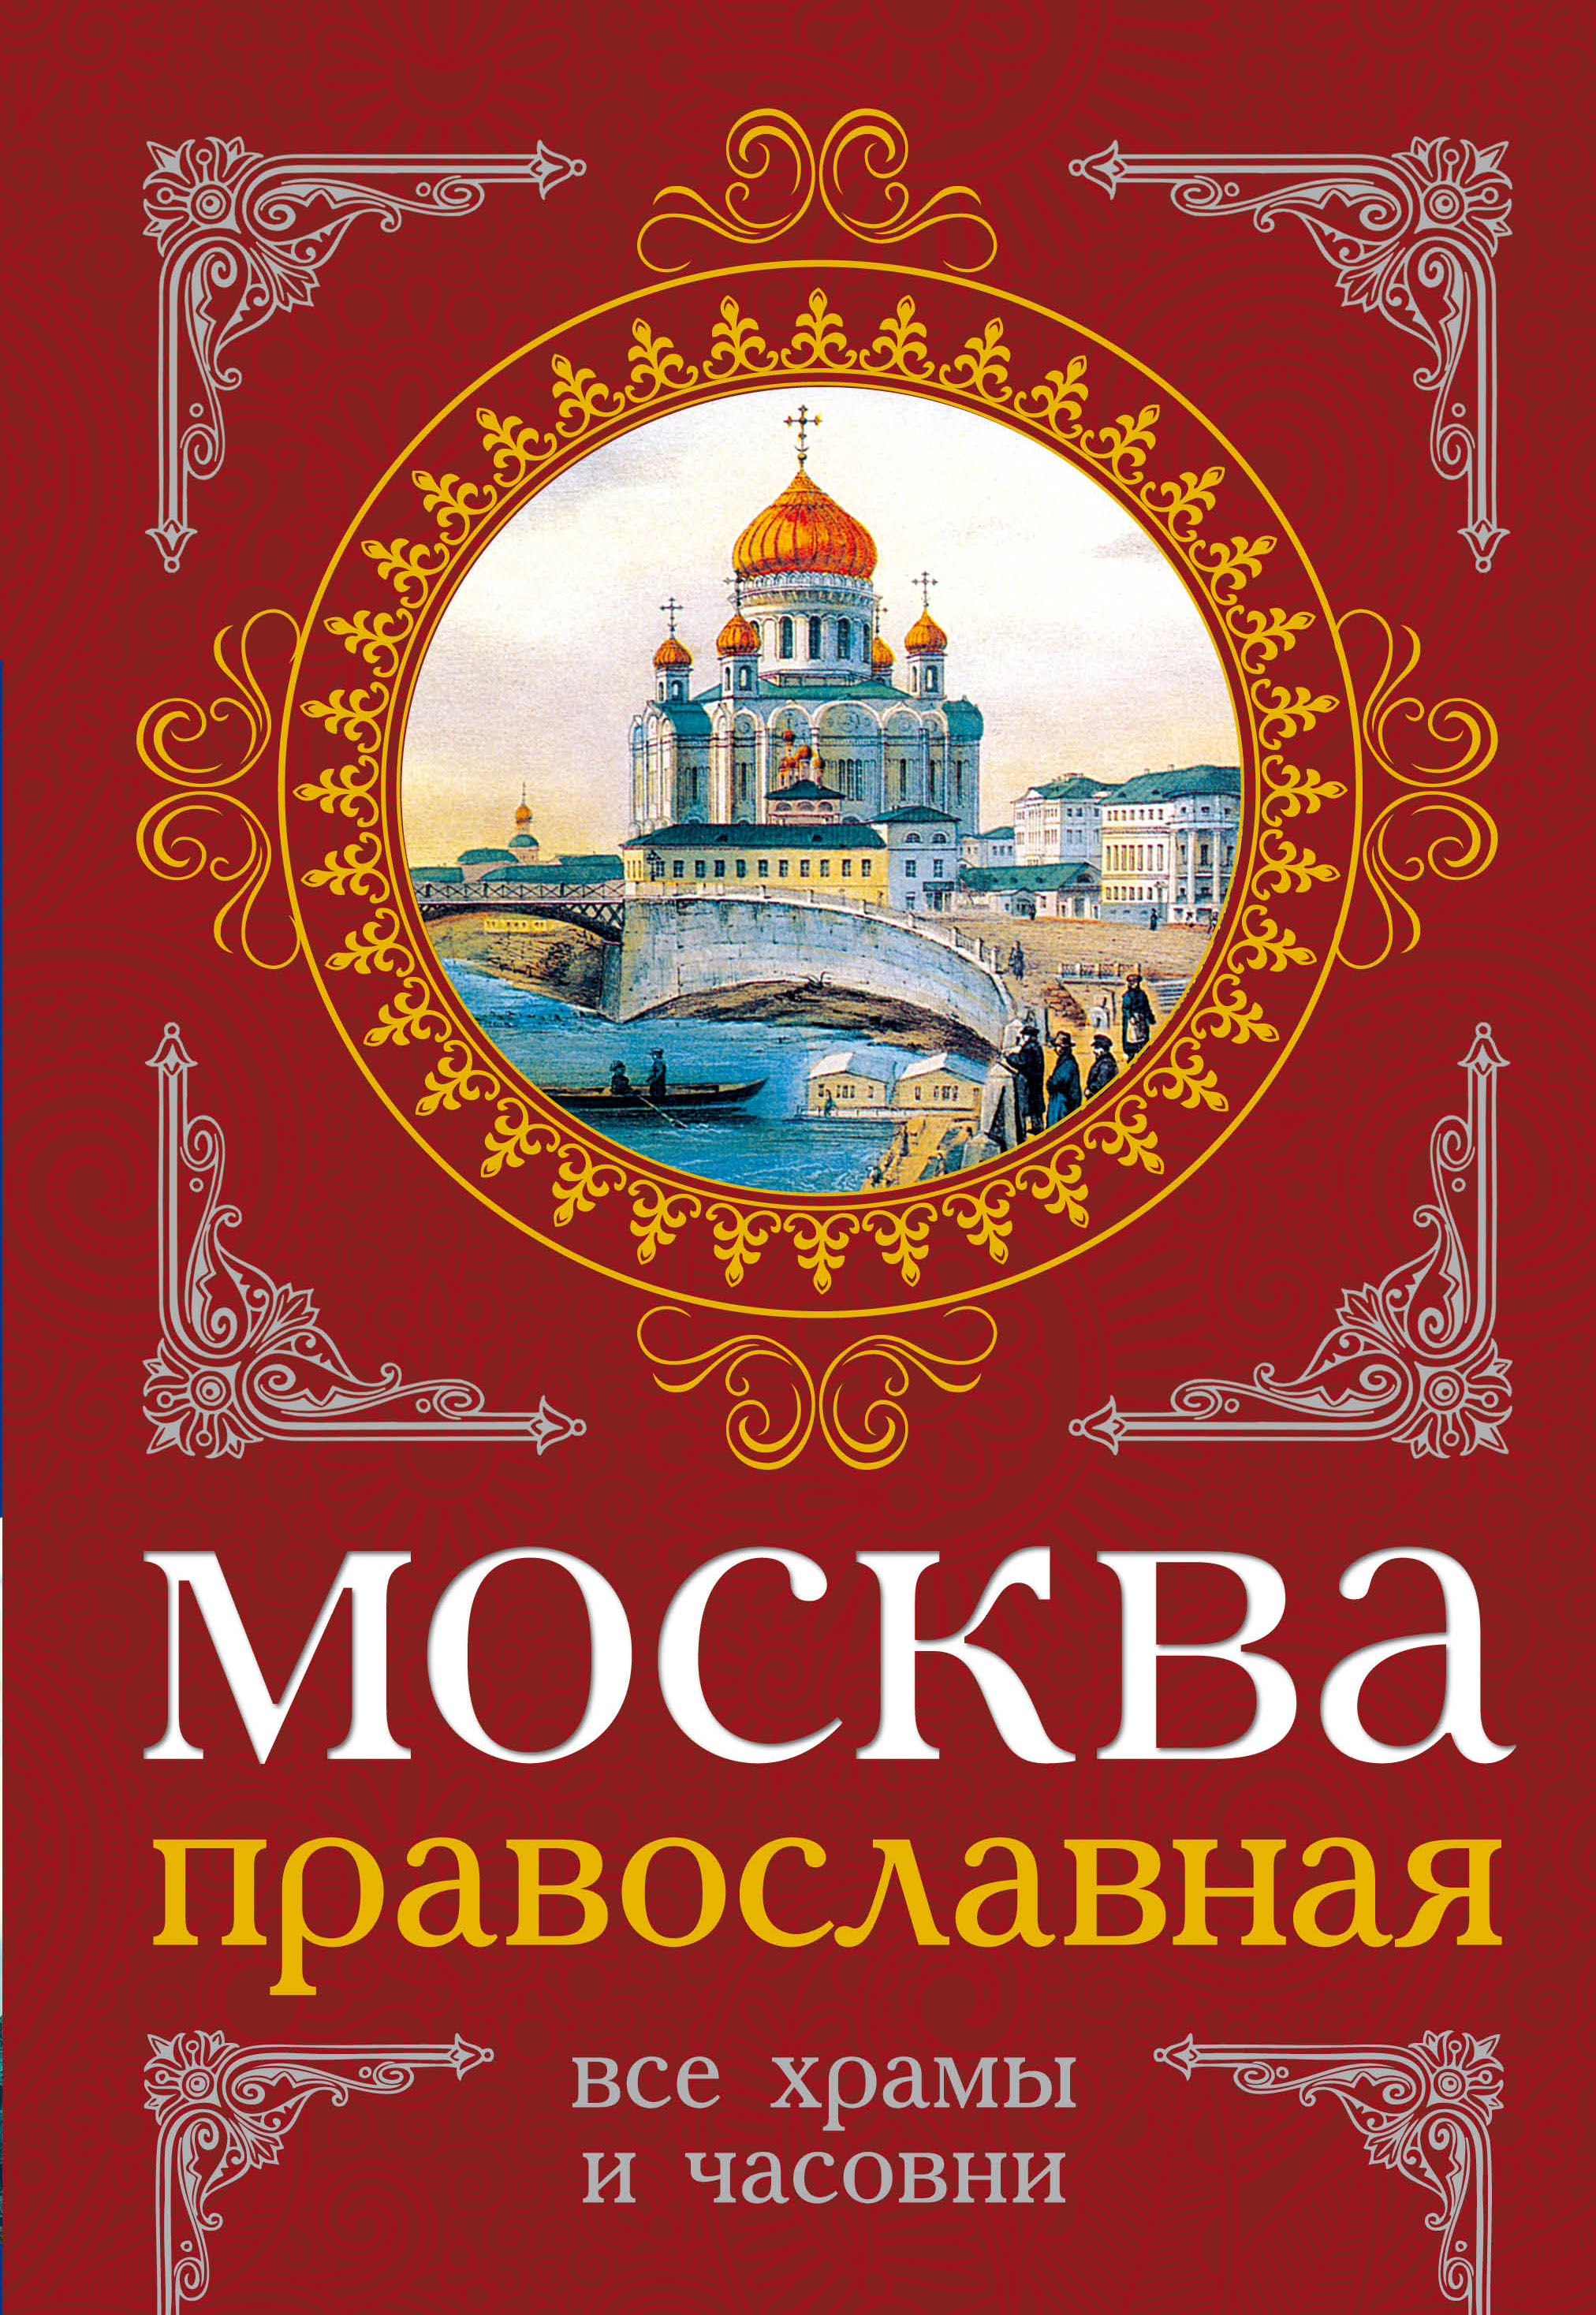 Купить книгу в москве в интернет магазине